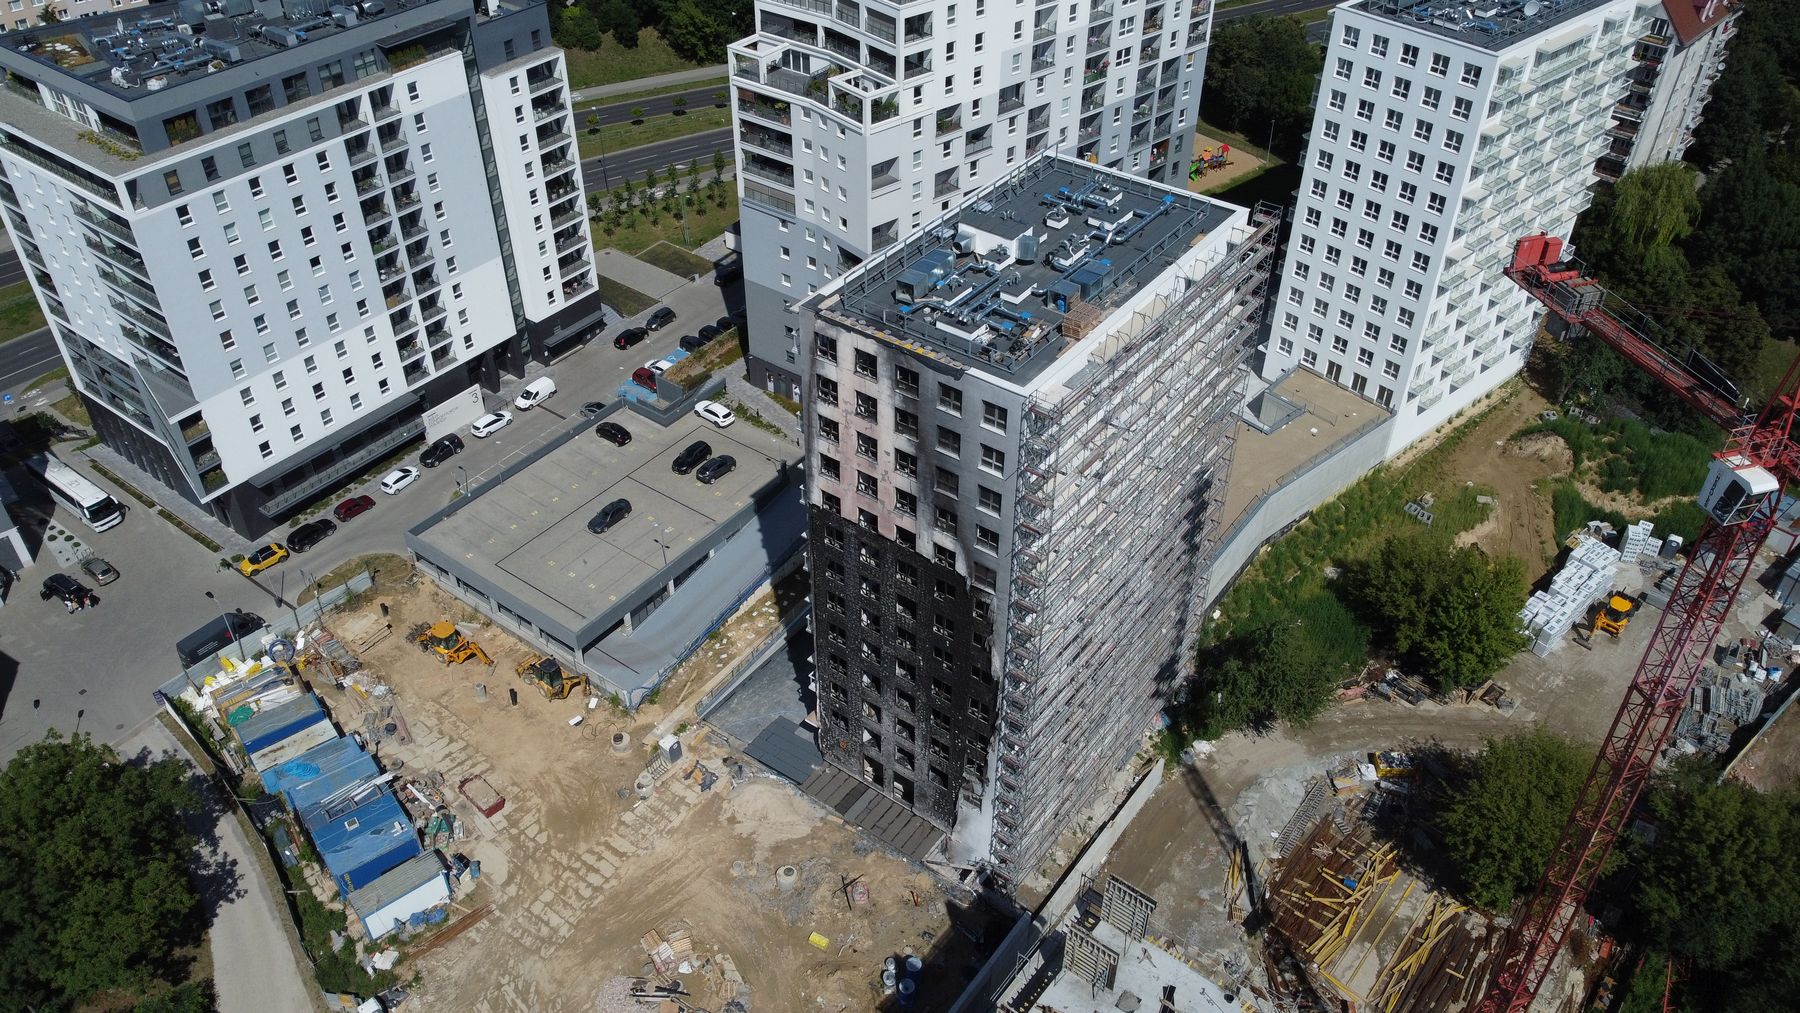 Prokuratura zajęła się sprawą pożaru wieżowca. Straty wstępnie oszacowano na 2,5 mln zł (zdjęcia)